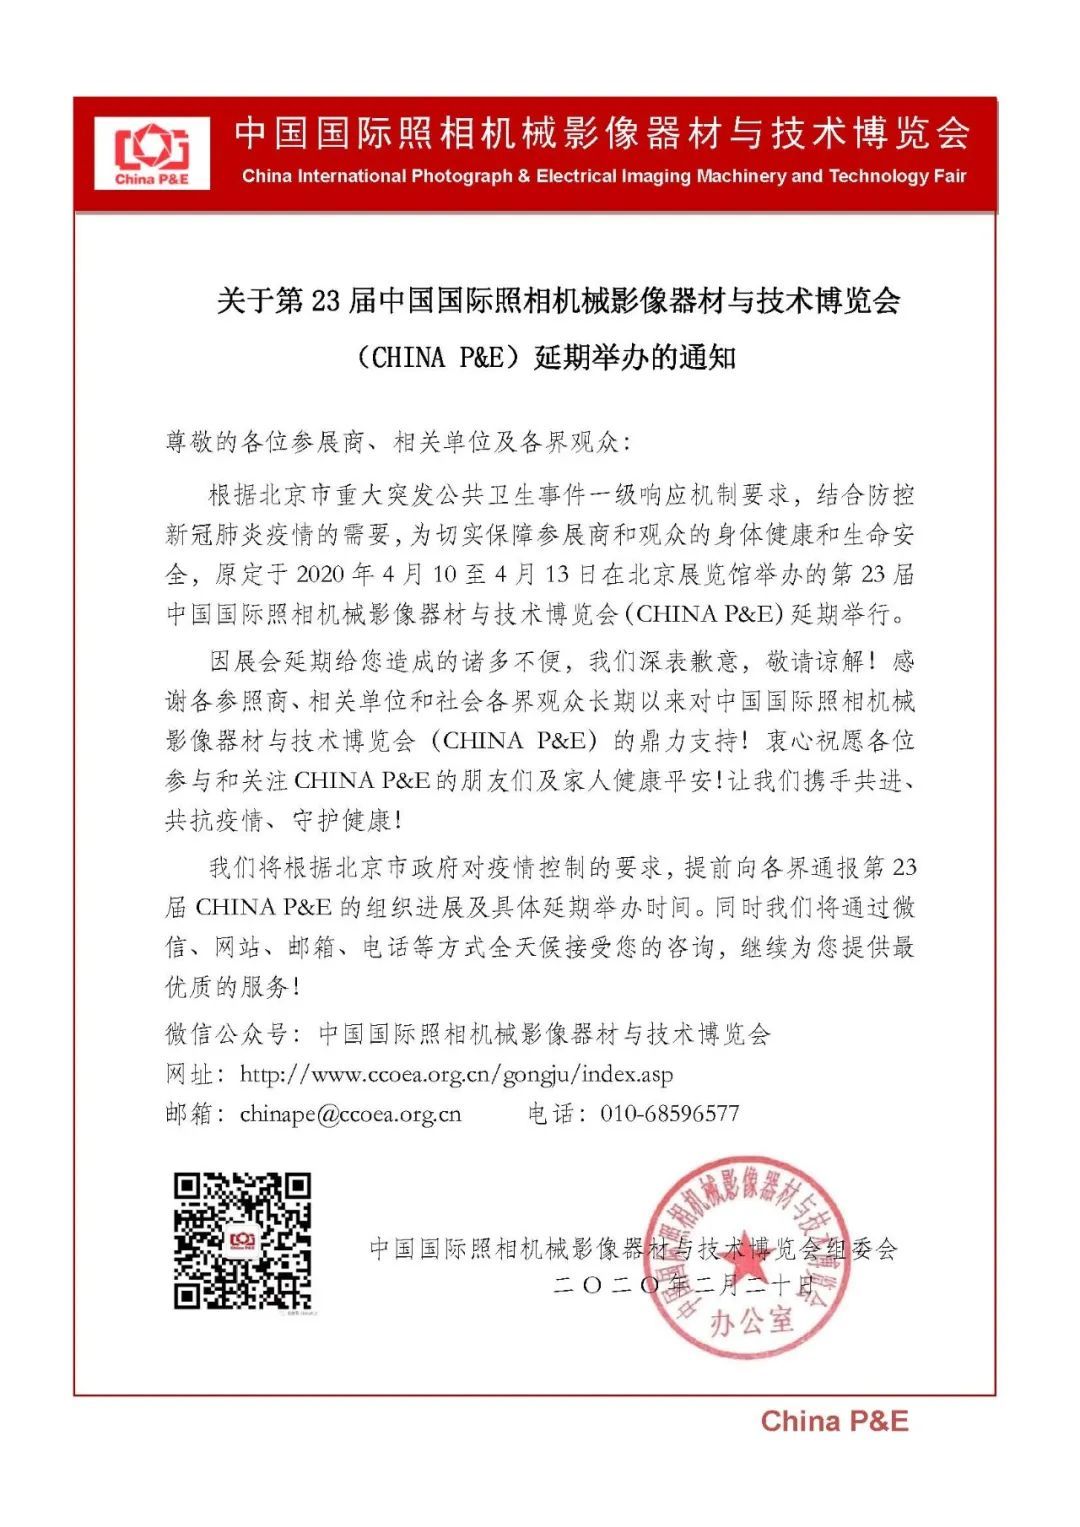 官方公告，受疫情影响CHINA P&E 摄影器材展将延期举办！